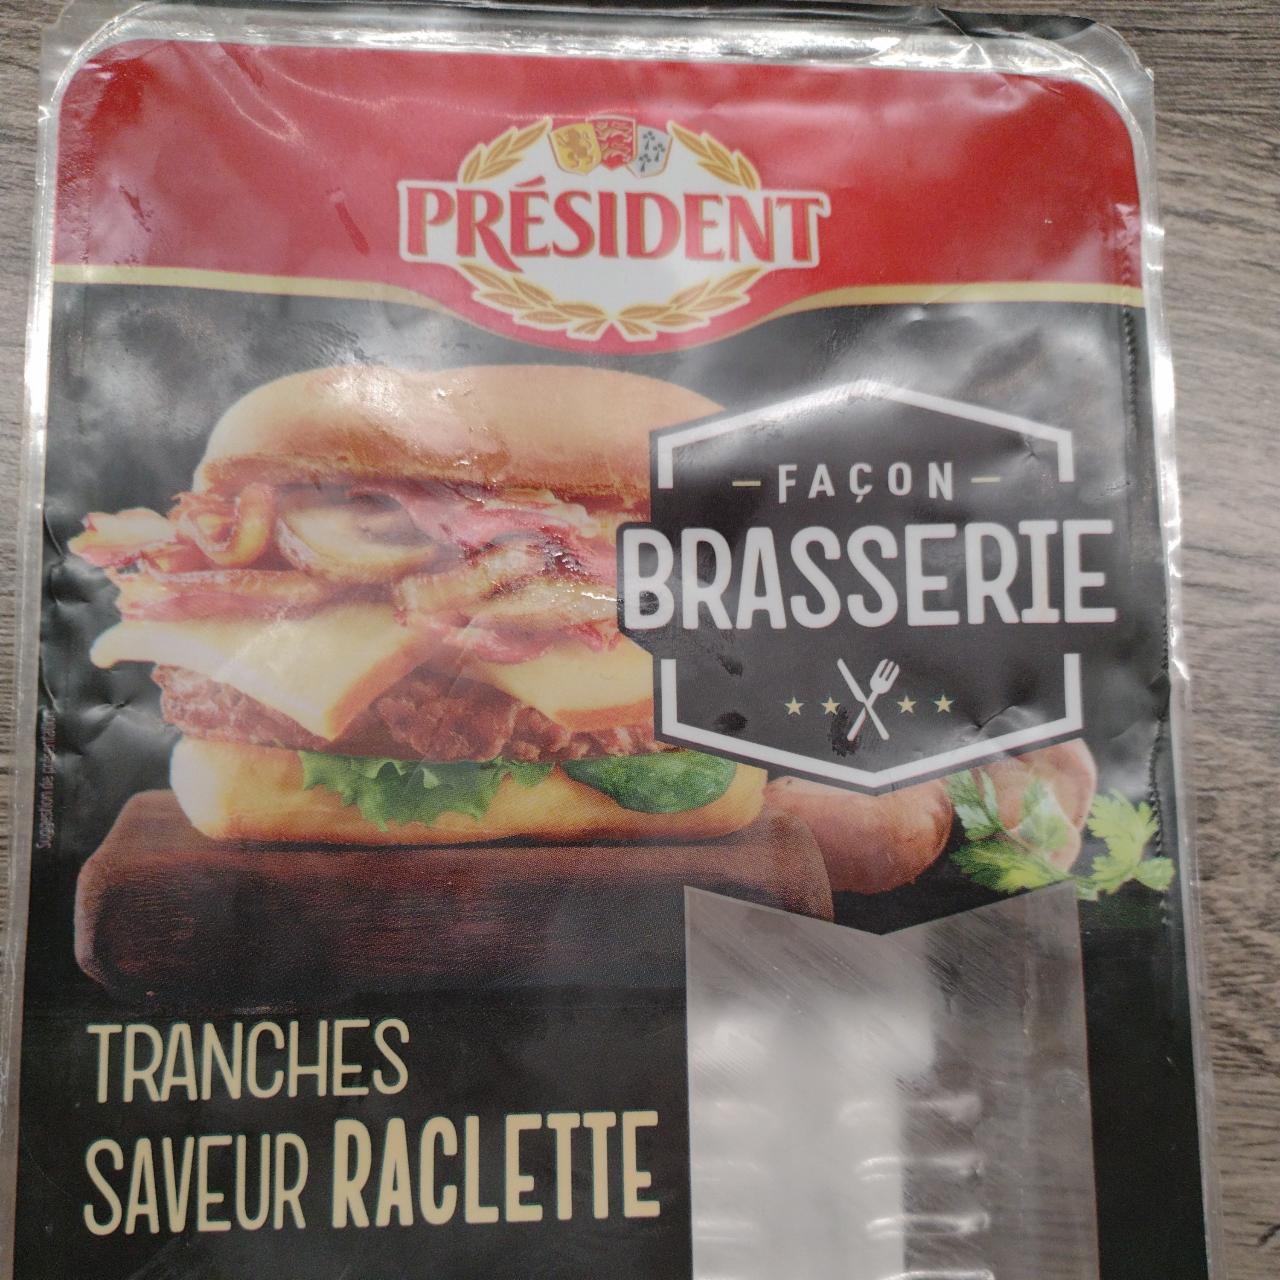 Fotografie - Tranches Saveur Raclette Façon Brasserie Président